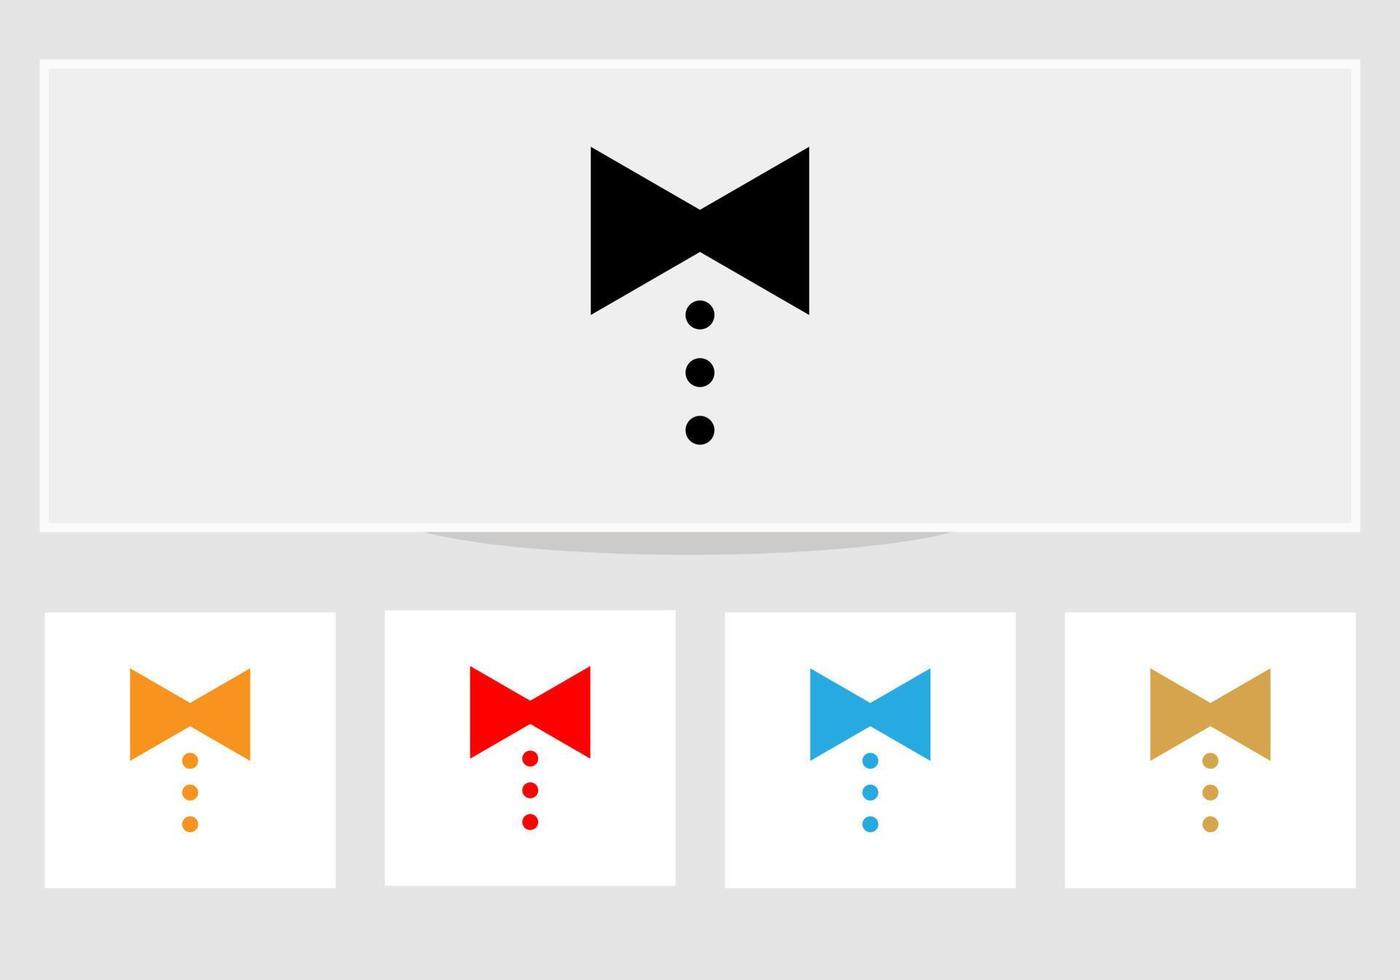 icône de cravate illustration vectorielle plate noire sur fond blanc eps 10. icône de cravate dans un style branché isolé vecteur